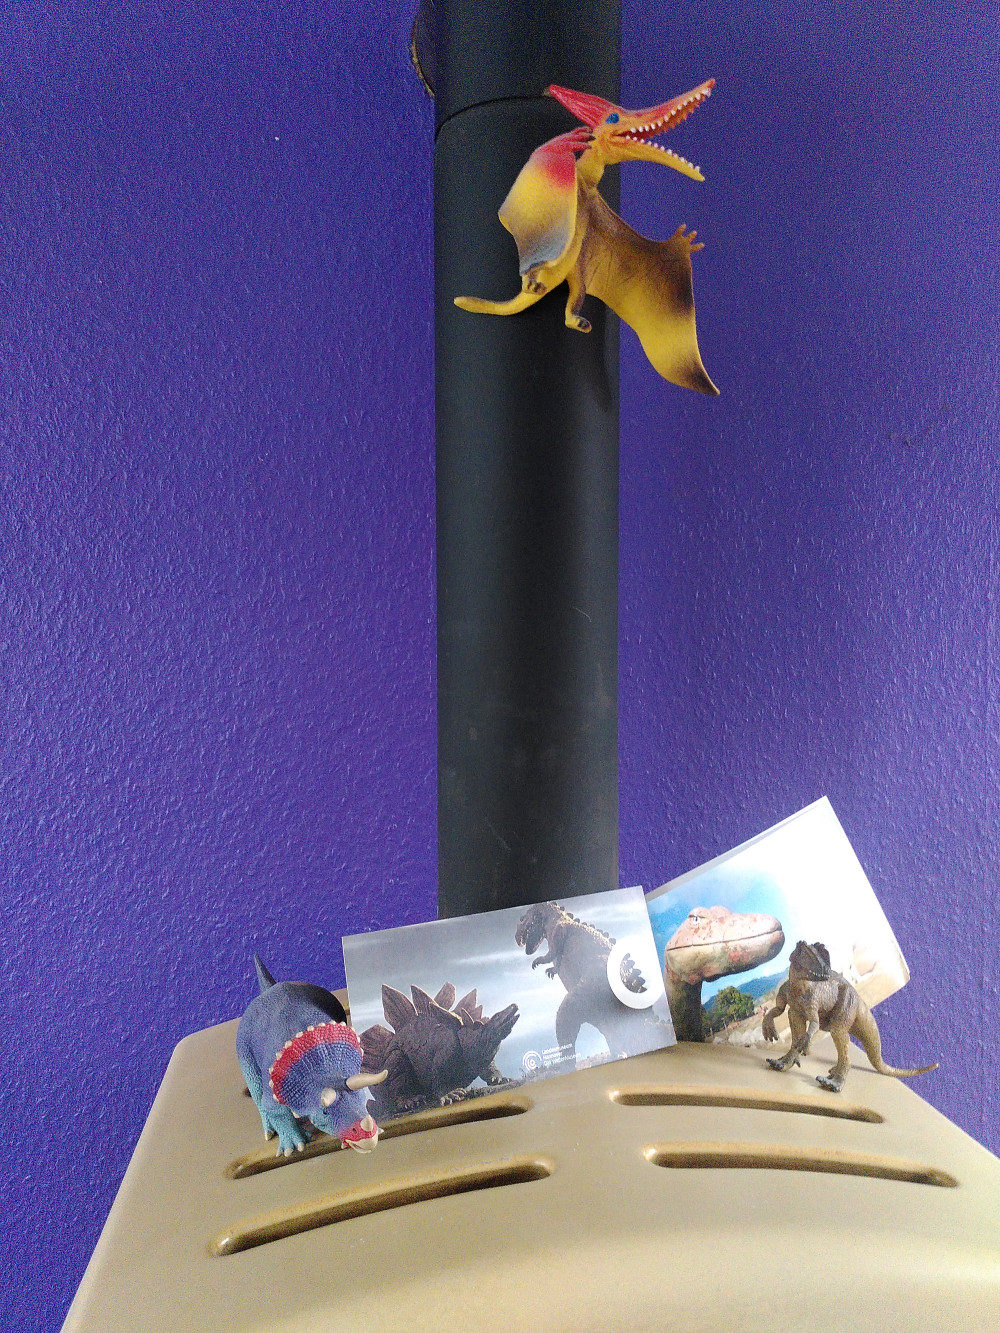 Farbfoto: von einem Ofen, auf dem zwei Saurierfiguren und zwei Postkarten mit Sauriern stehen, am Ofenrohr hängt eine bunte Flugsaurier-Figur.